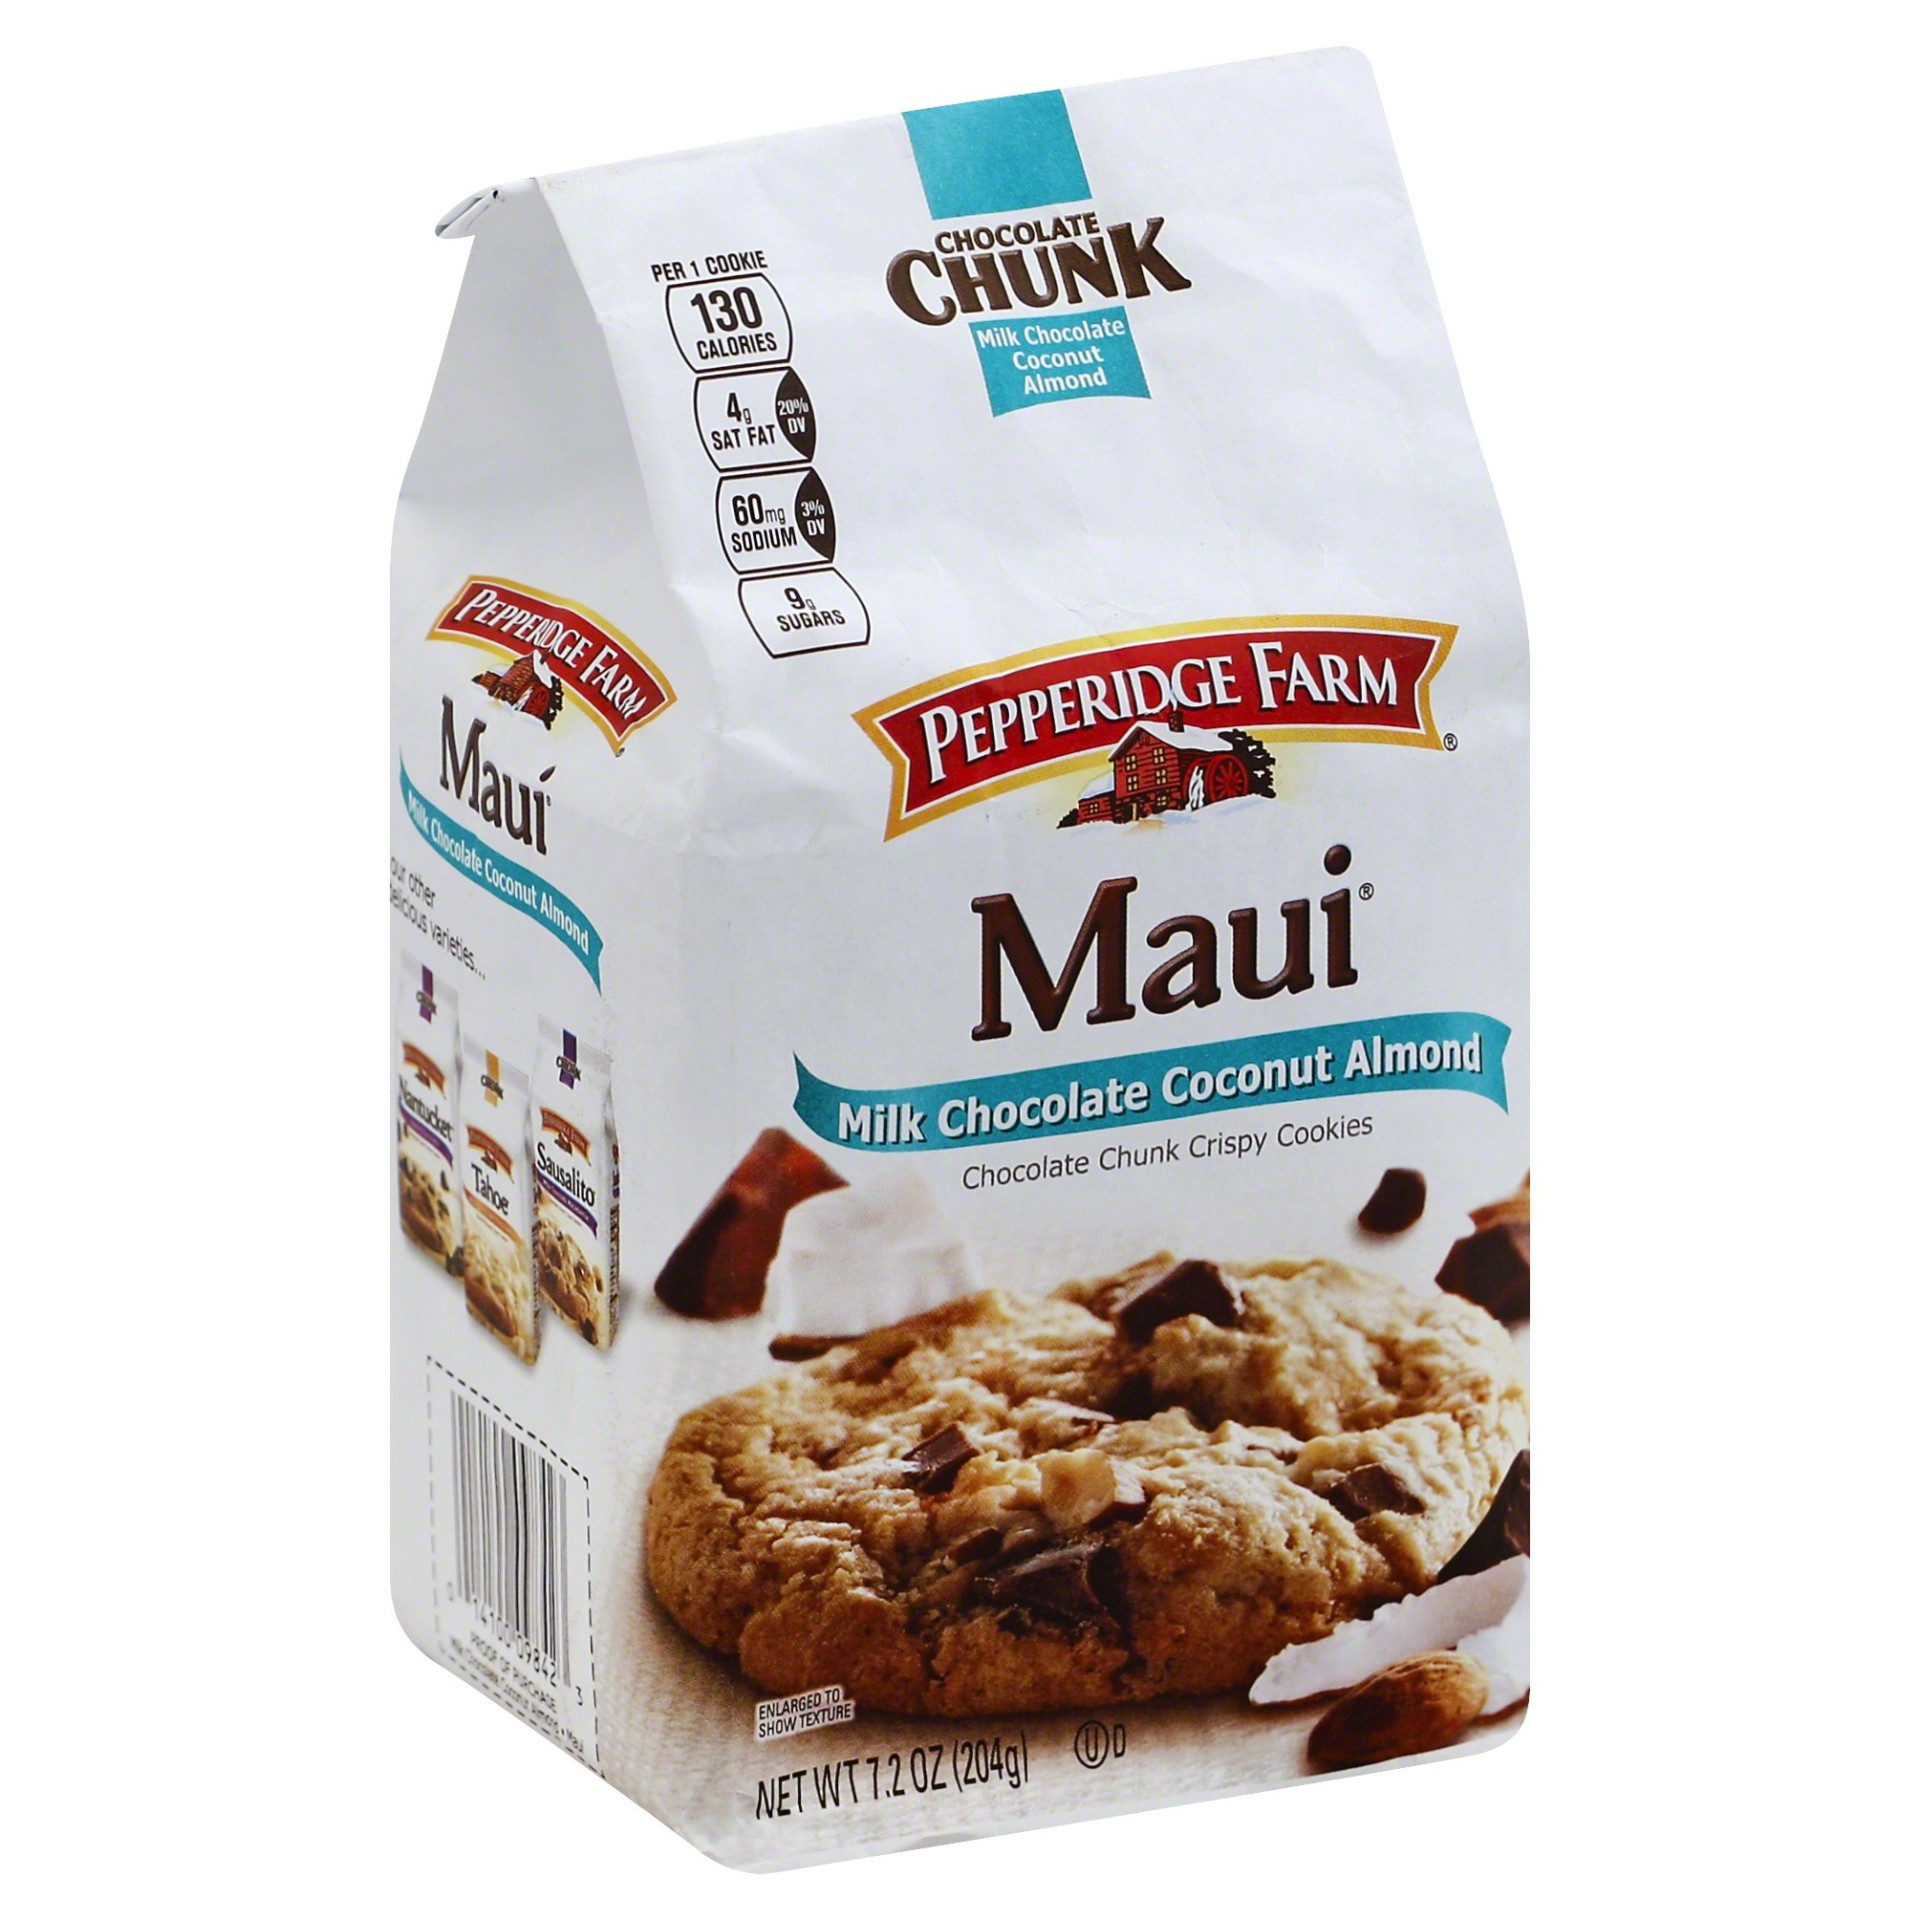 slide 1 of 5, Pepperidge Farm Maui Milk Chocolate Coconut Almond Cookies, 7.2 oz